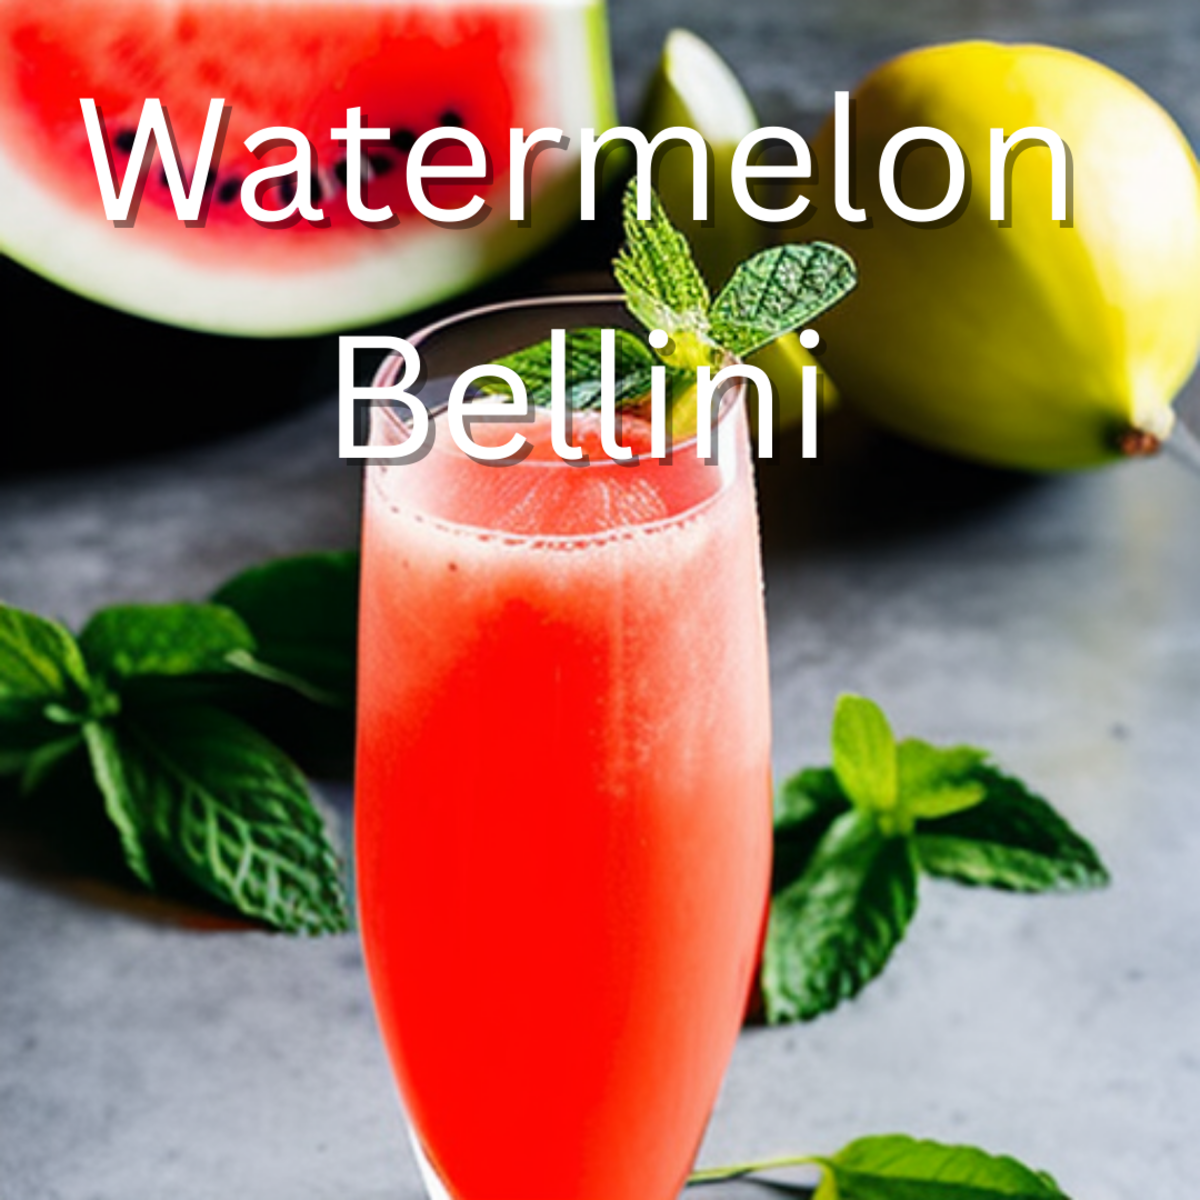 Watermelon Bellini